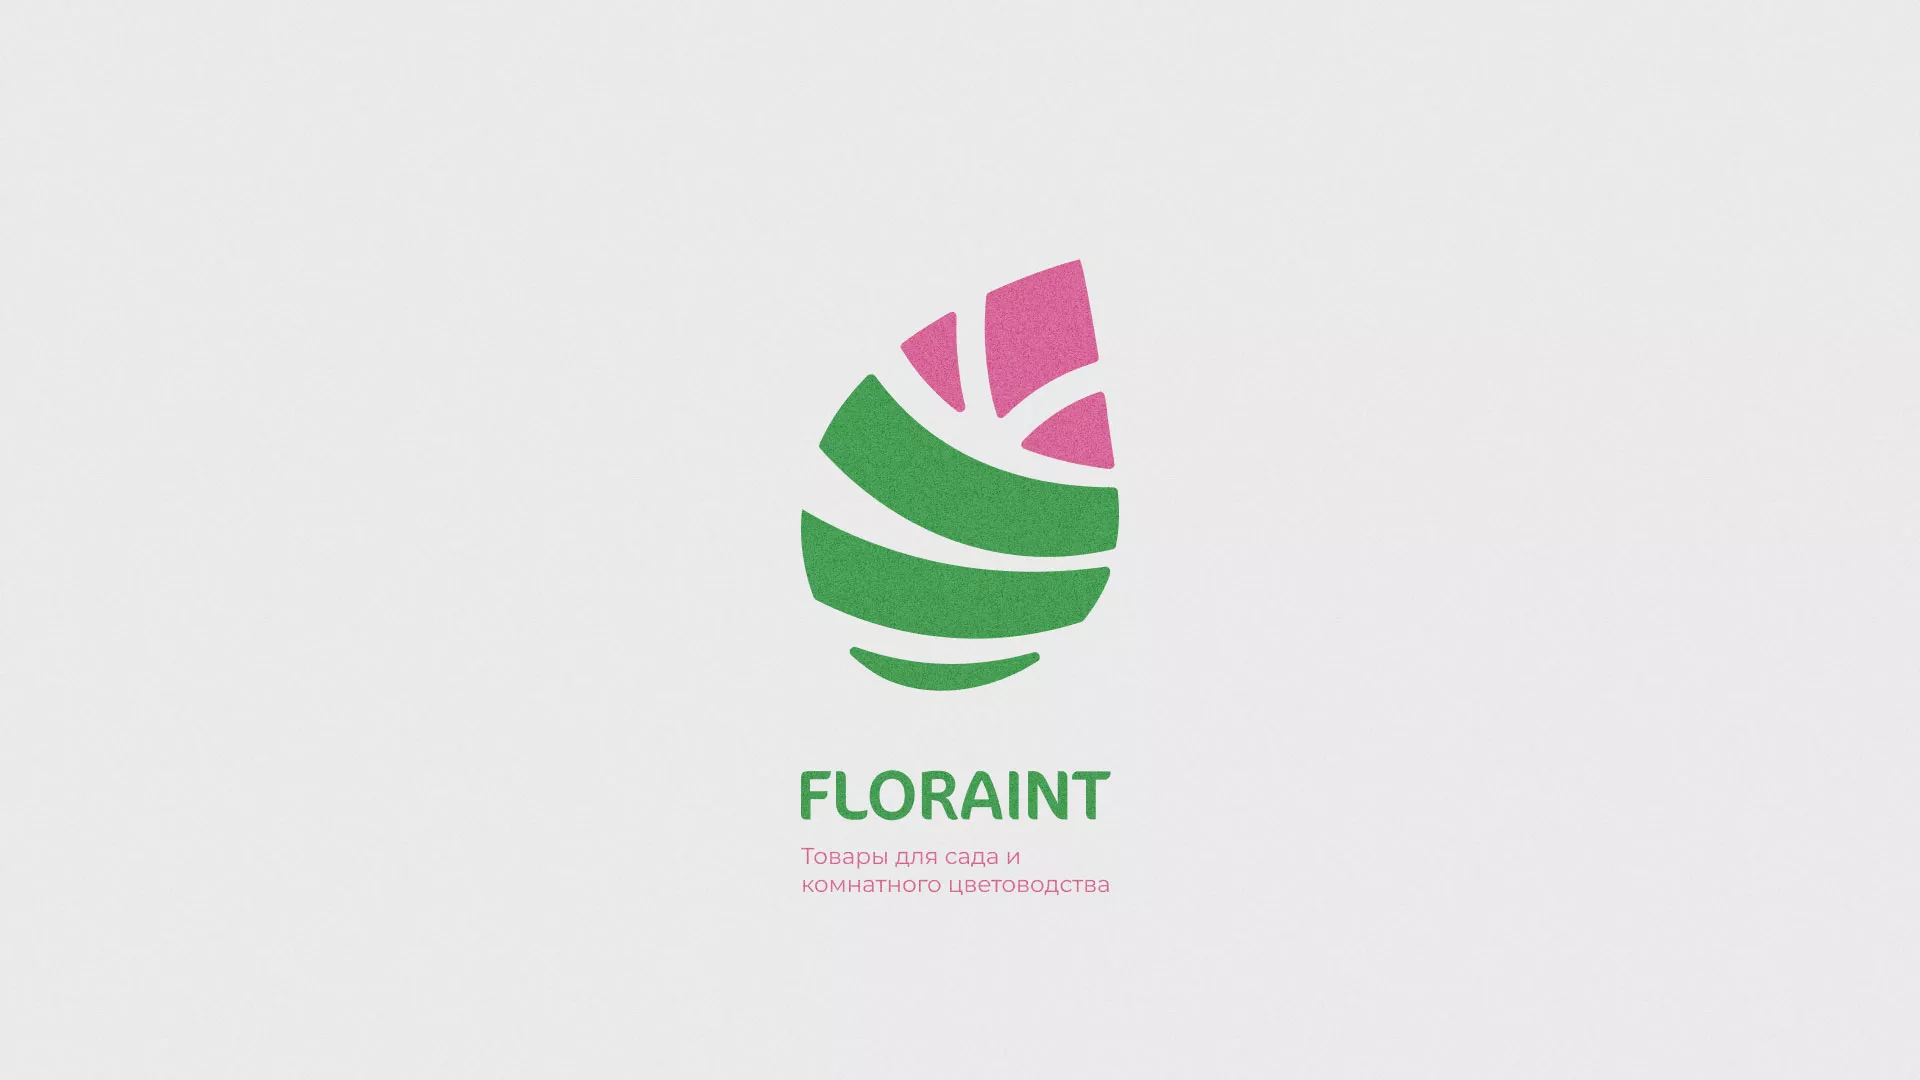 Разработка оформления профиля Instagram для магазина «Floraint» в Кяхте